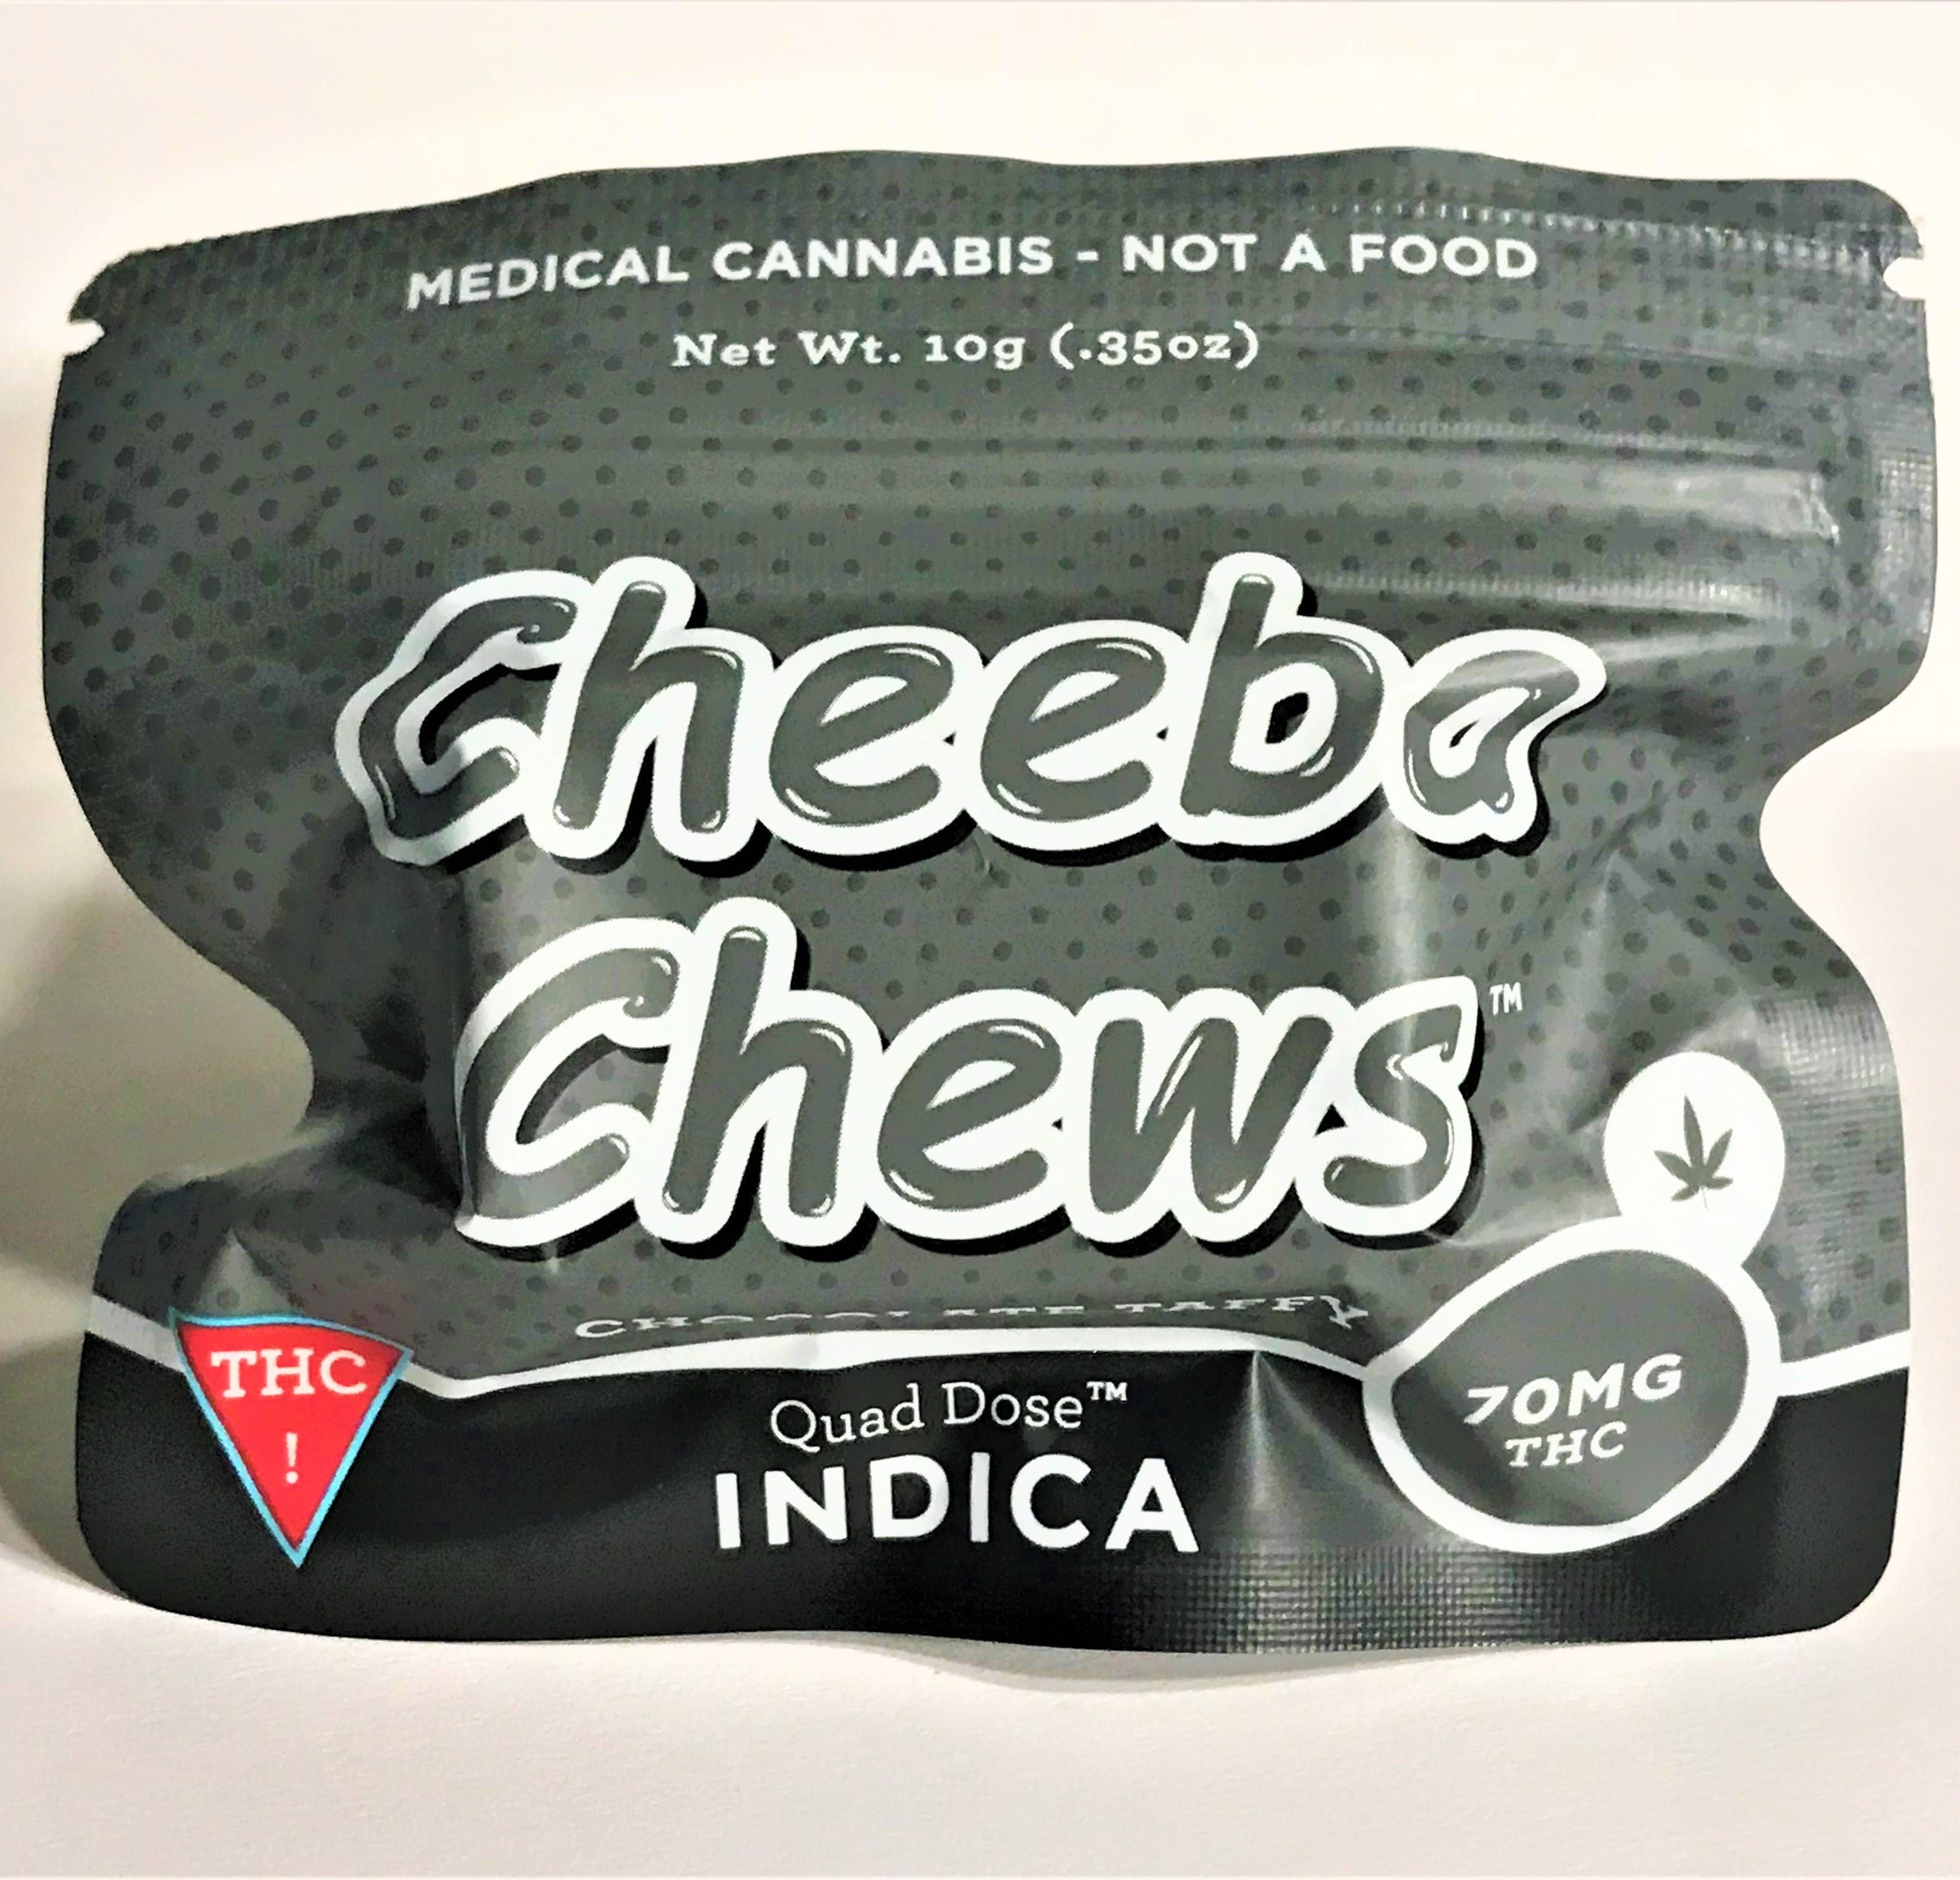 marijuana-dispensaries-520-w-182nd-st-gardena-cheeba-chew-indica-black